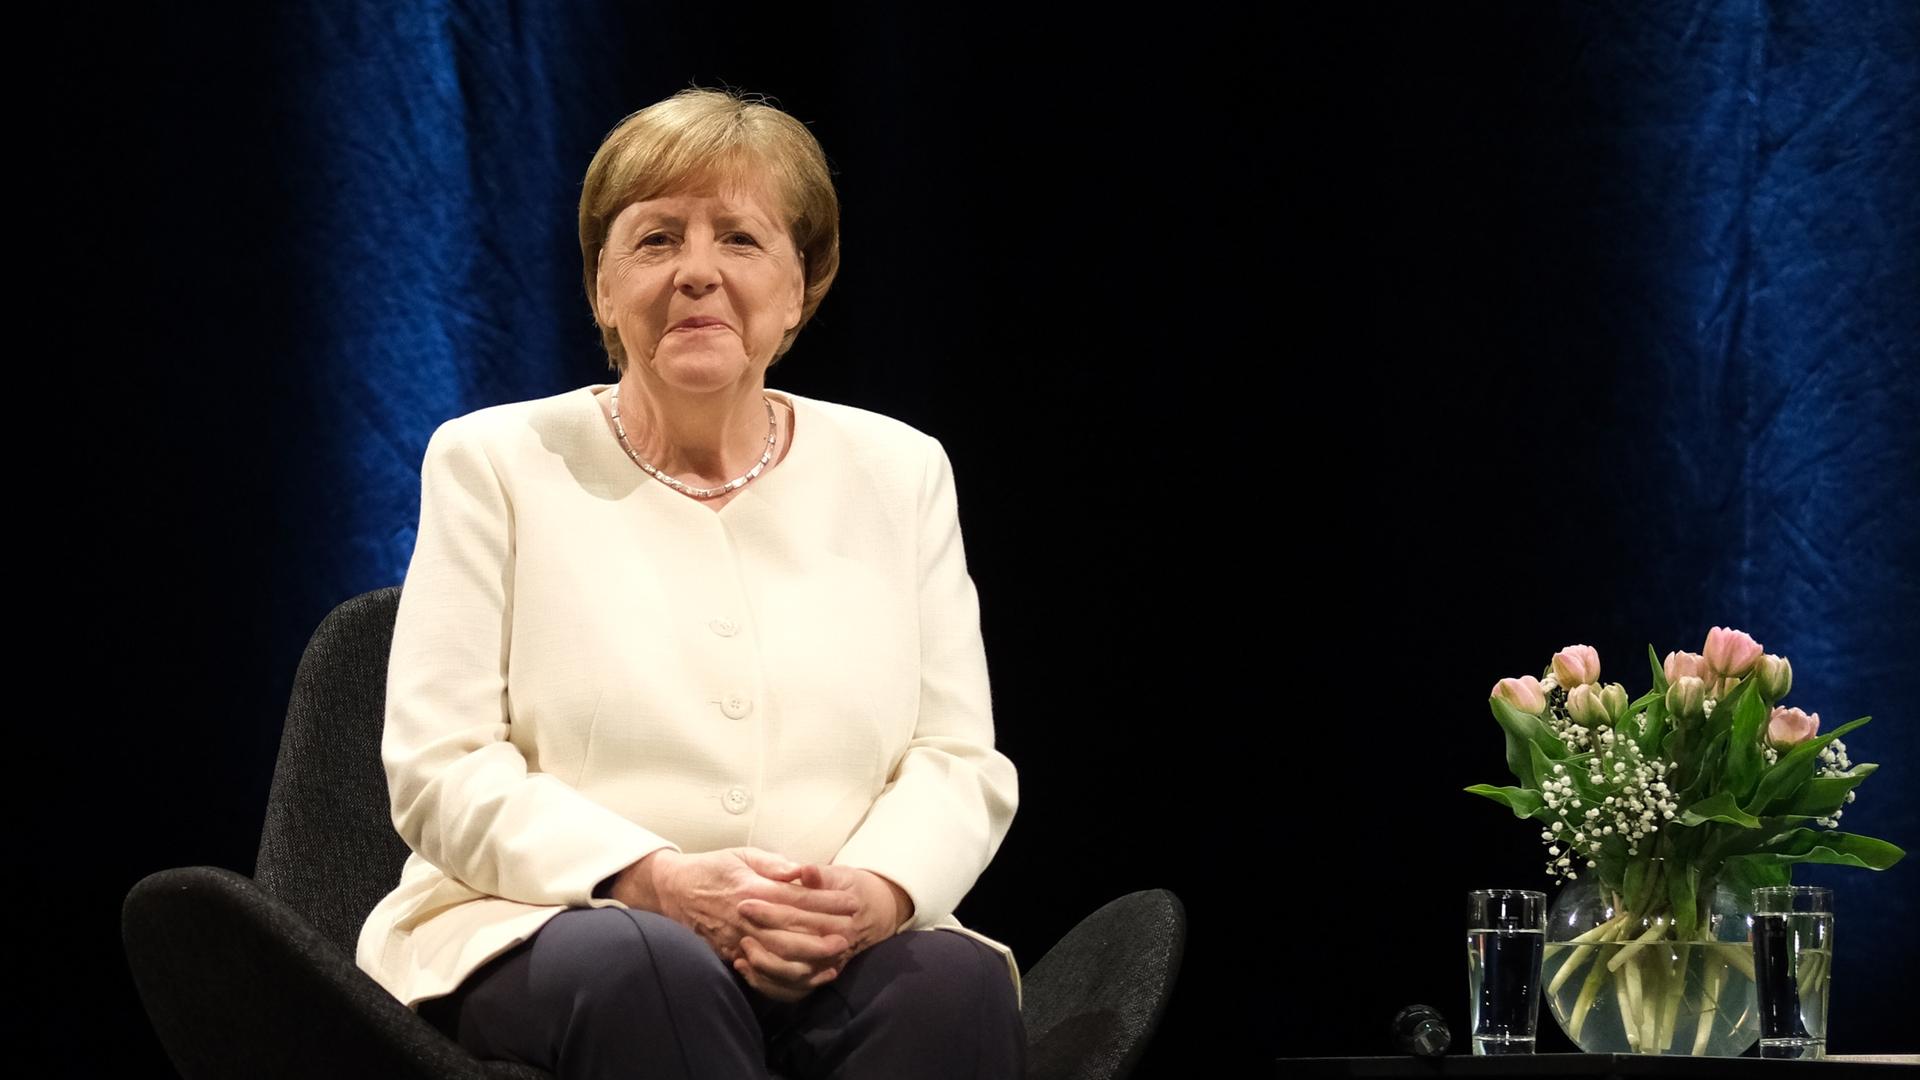 Die frühere Bundeskanzlerin Angela Merkel sitzt auf einem Stuhl vor dunklem Hintergrund, neben ihr ein Tischchen mit einem Blumenstrauß.